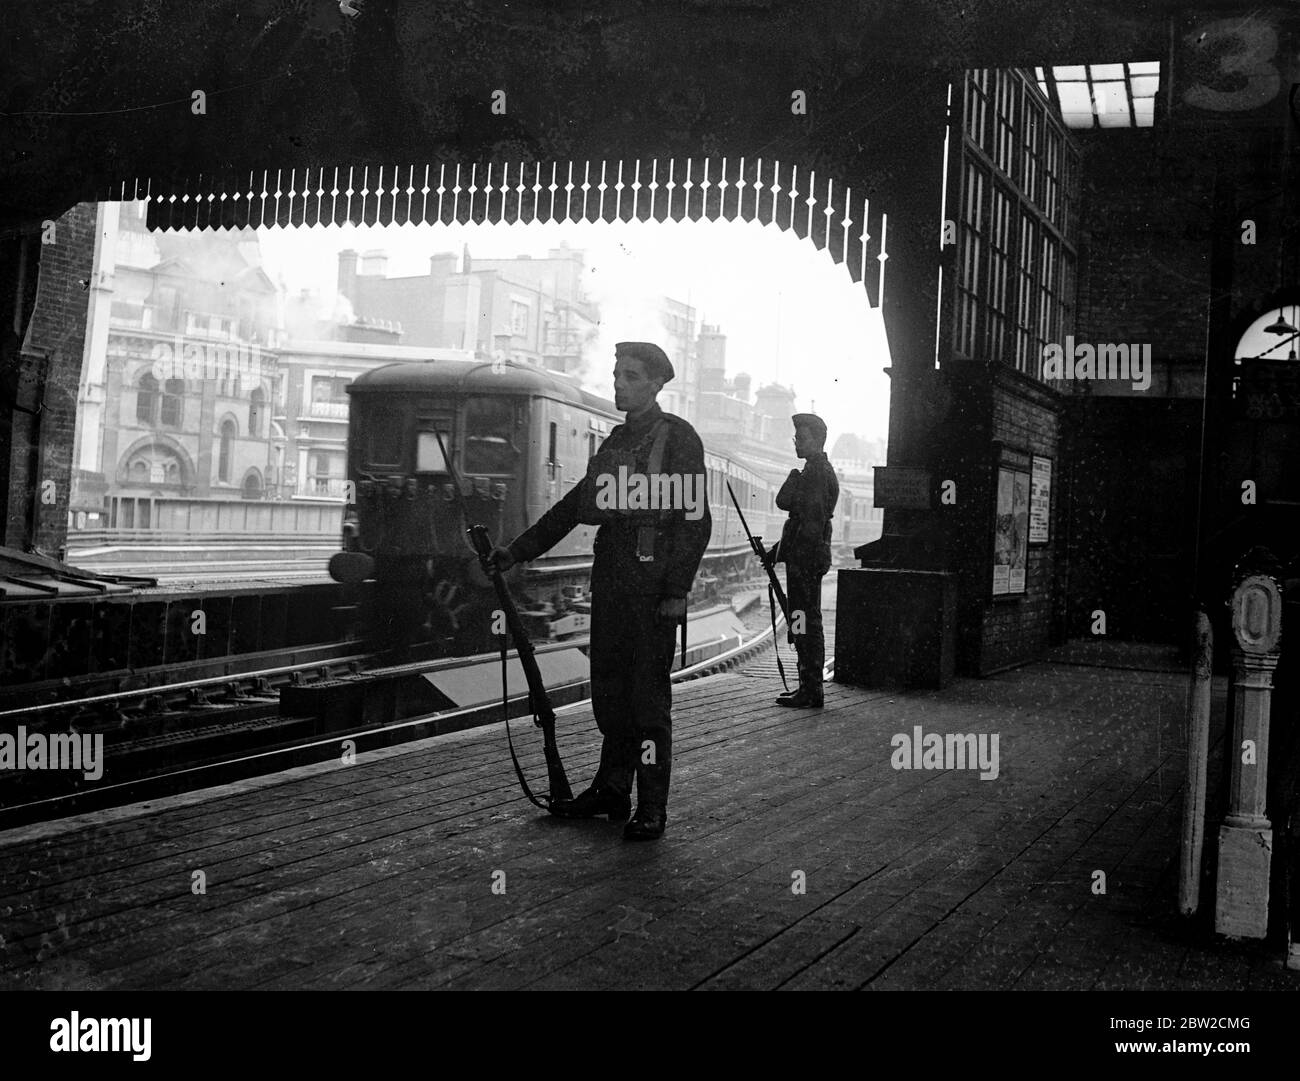 An wichtigen Punkten Londons, einschließlich Bahnhöfen, Warenhöfen und wichtigen städtischen Gebäuden, wurden Militärwachen installiert. Militärwachen auf einem Bahnsteig an einem Londoner Bahnhof. Bis 30. August 1939 Stockfoto